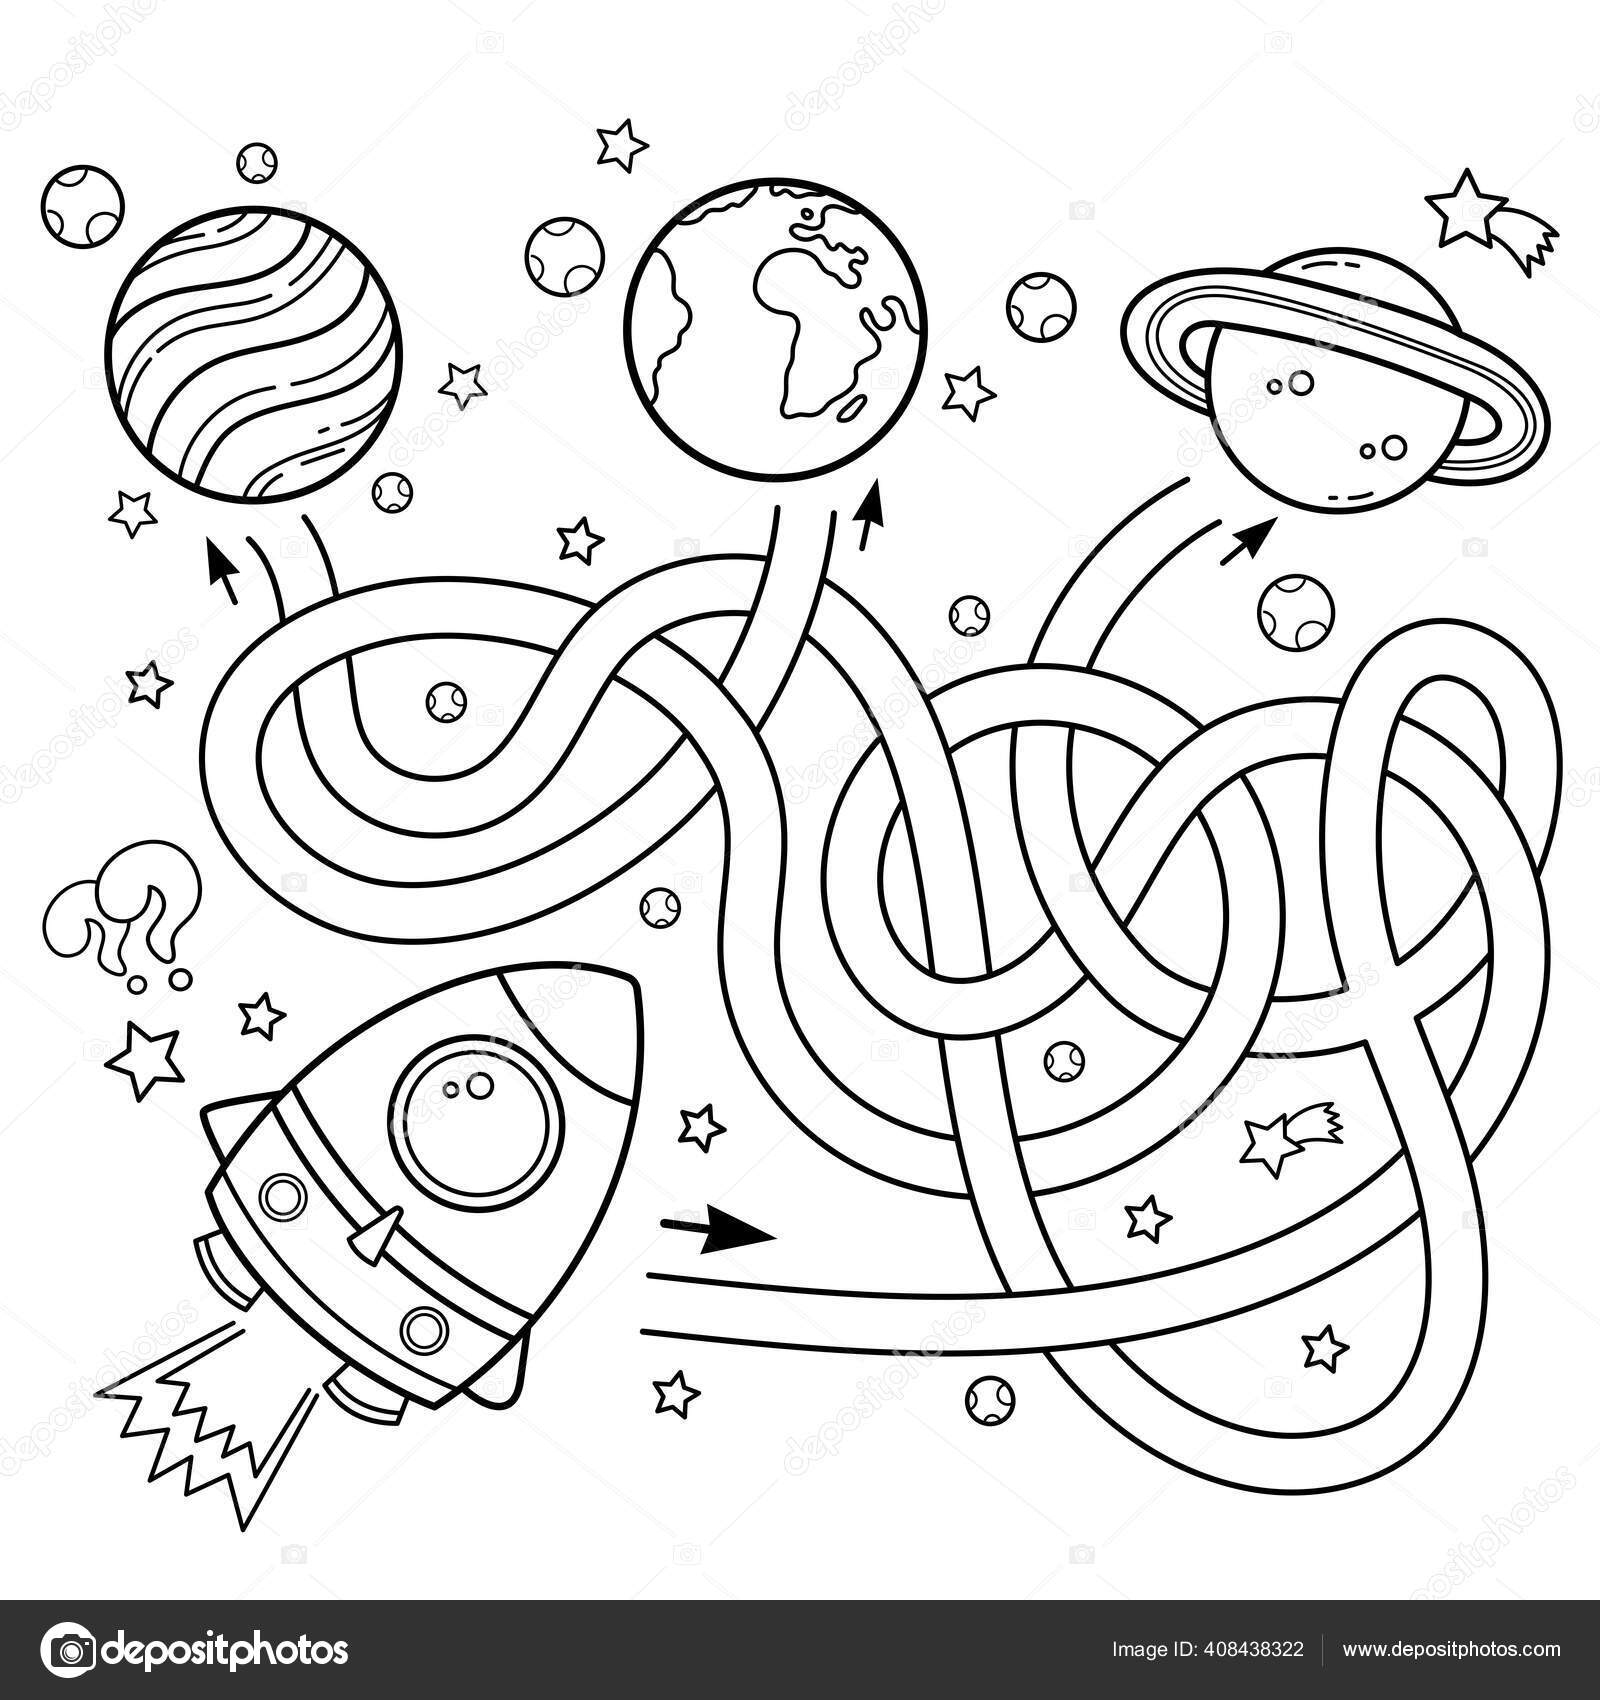 Desenho de Jogos do labirinto - astronauta para colorir - Tudodesenhos